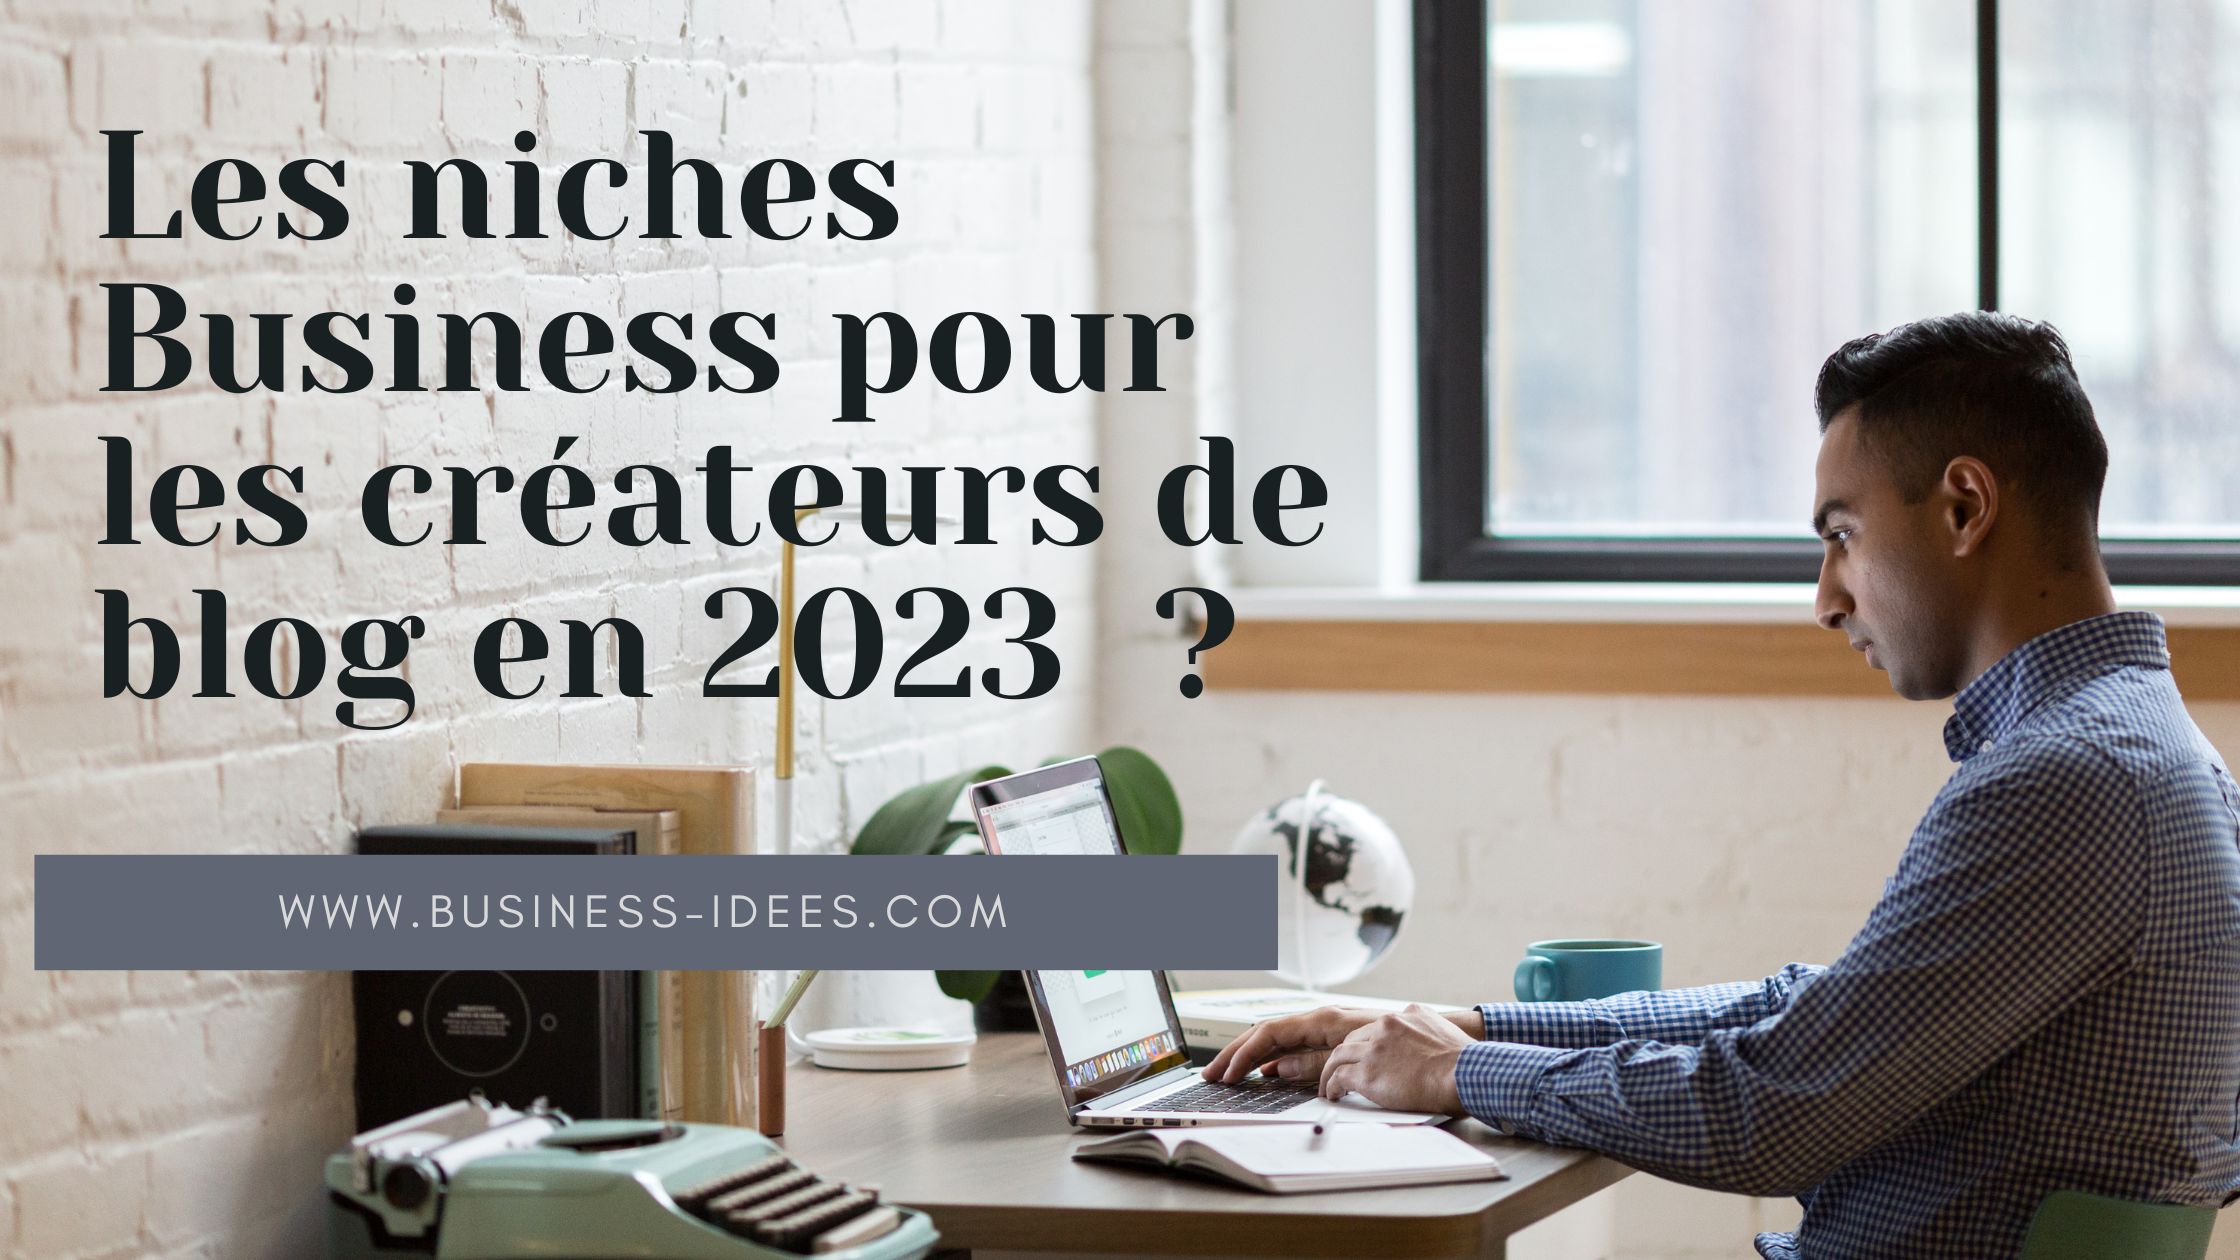 Quelles sont les niches Business pour les créateurs de blog en 2023